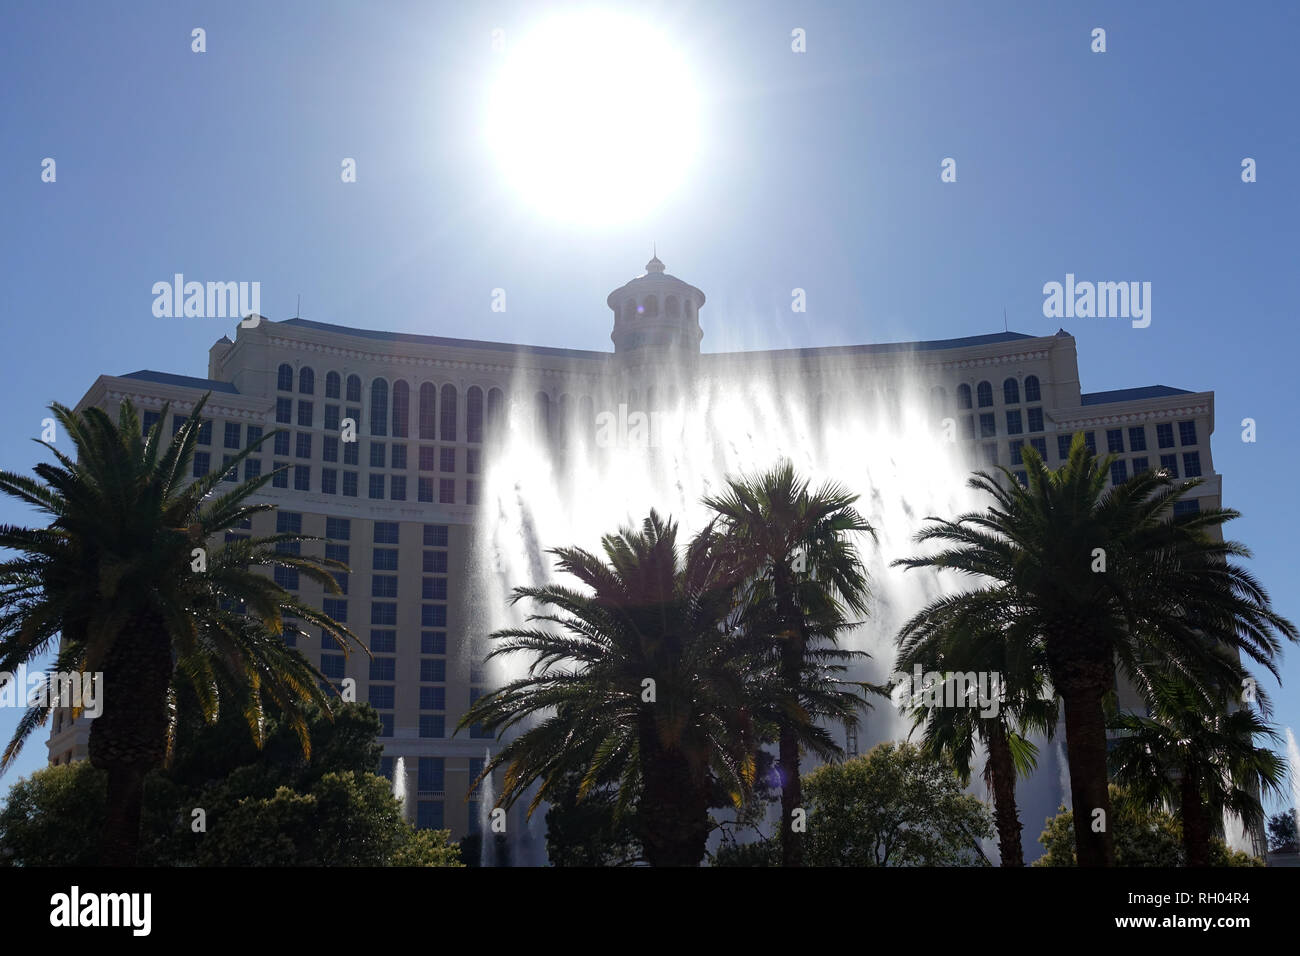 Les fontaines sur l'affichage à l'extérieur du Casino Bellagio à Las Vegas, Nevada. Banque D'Images